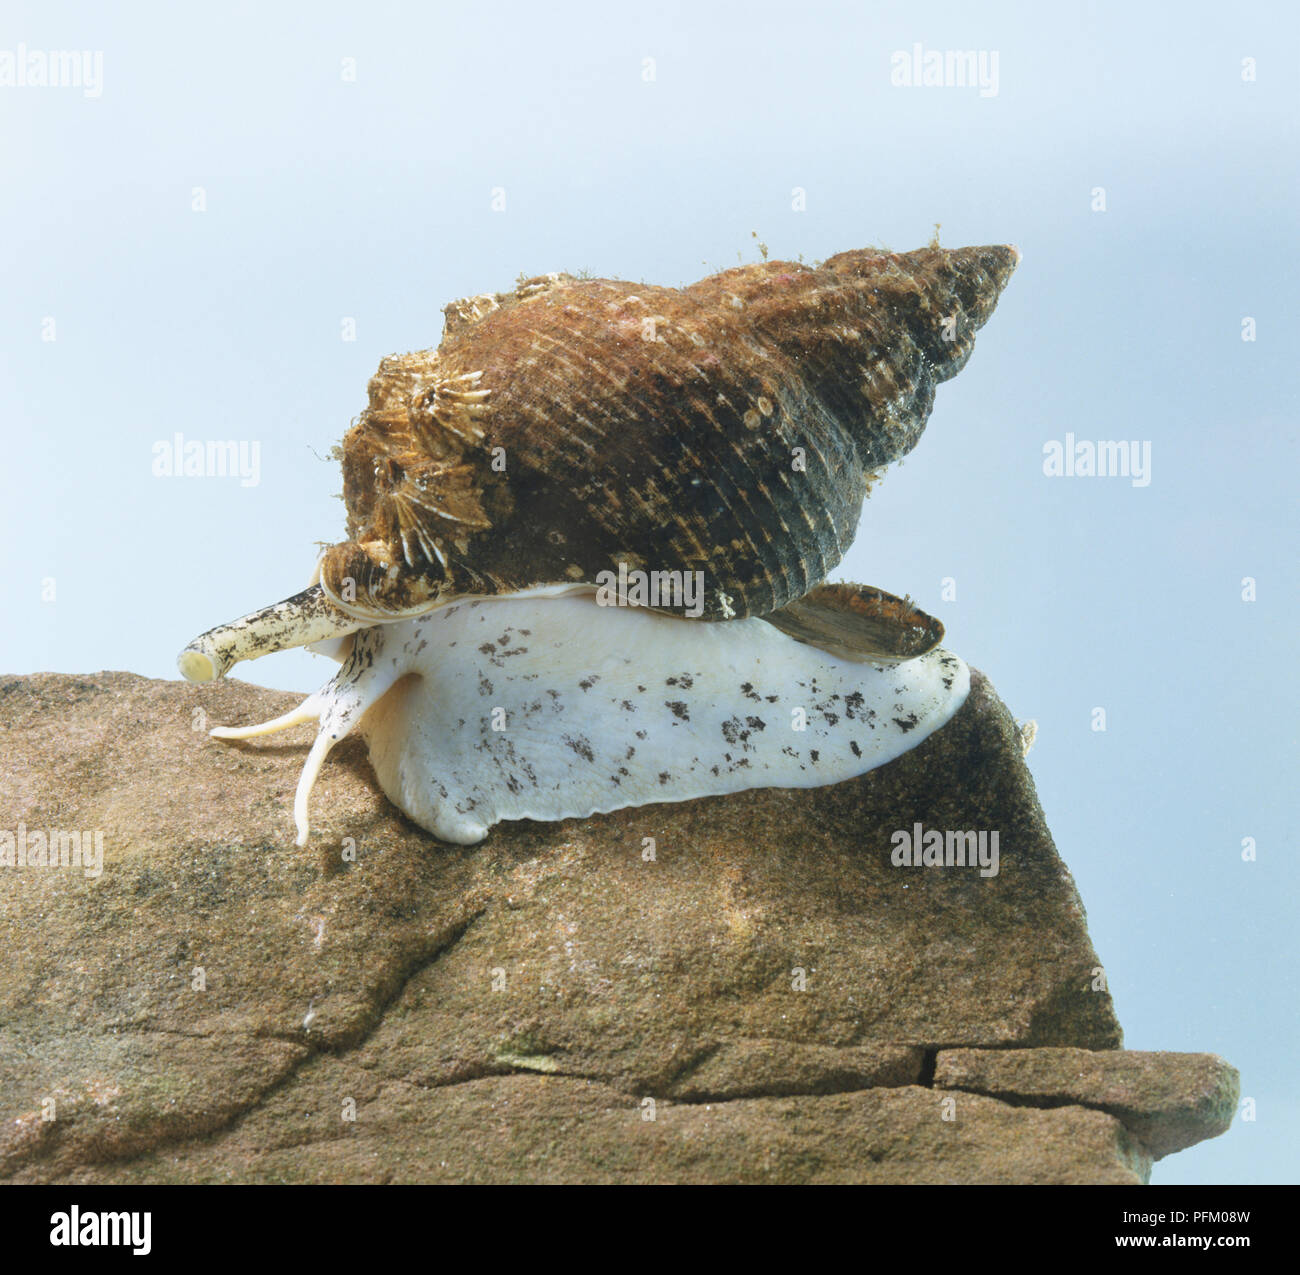 Wellhornschnecken (buccinidae), einem marine Schnecke auf einem Felsen Stockfoto